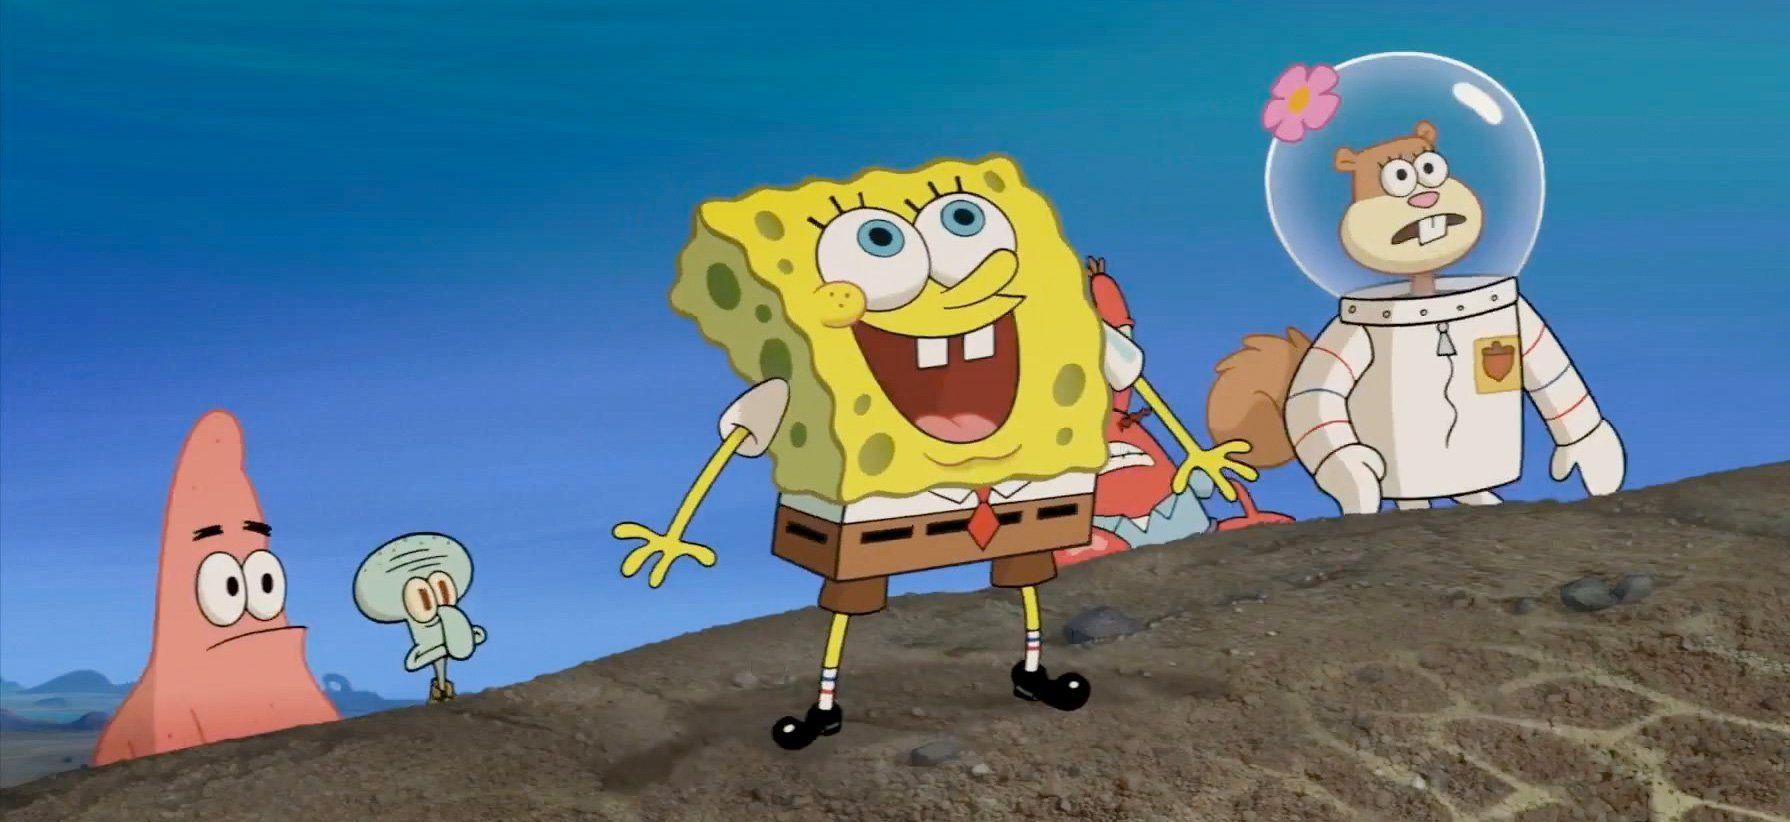 Paramount Animation Announces SpongeBob Sequel Its a Wonderful